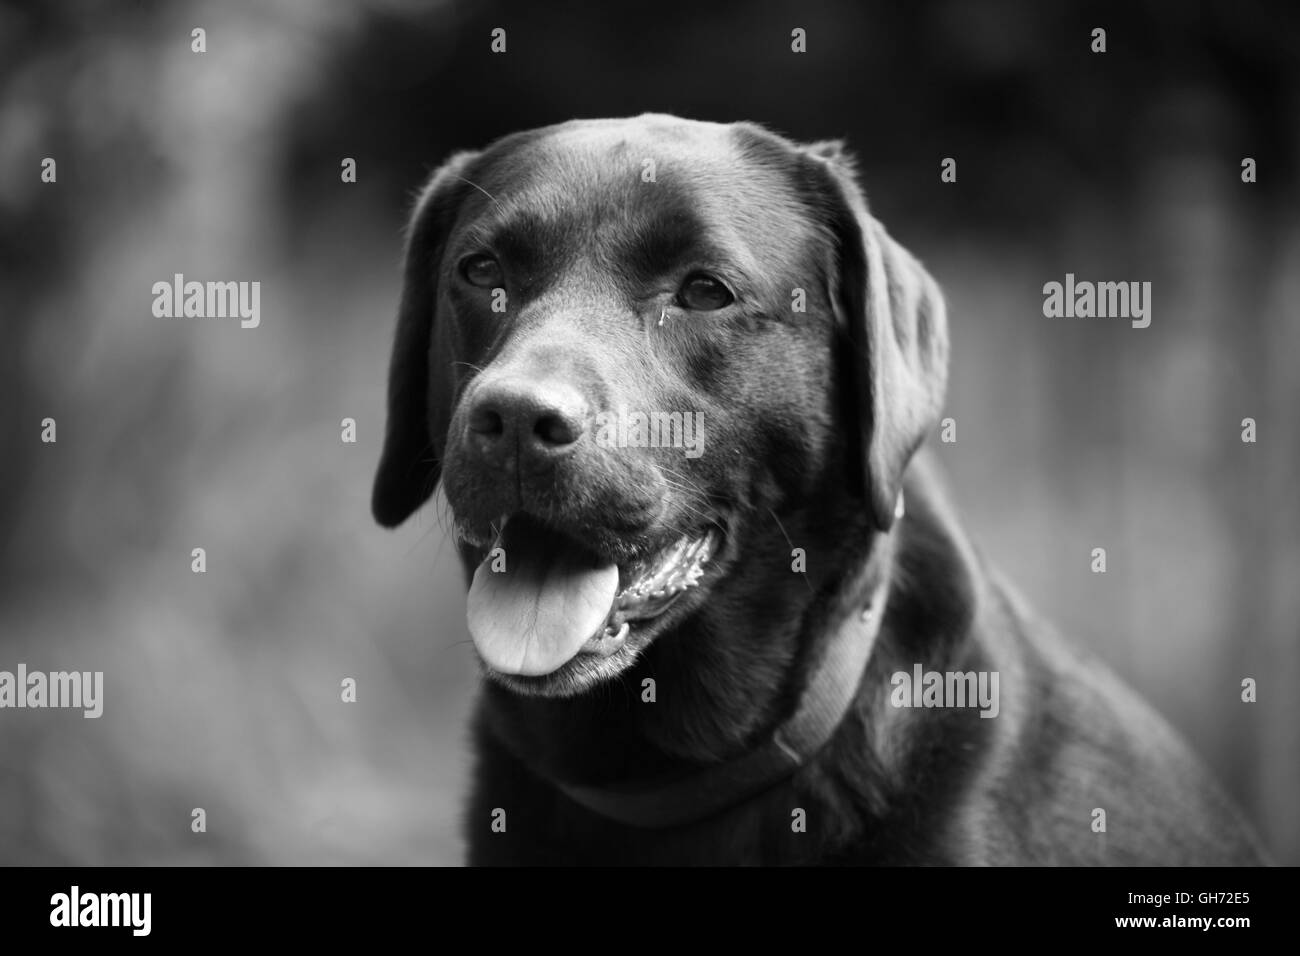 Cane all'aperto, grande razza cane, cane fotografia, ritratto di cane, veterinari e la fotografia in bianco e nero, animali animali domestici Foto Stock